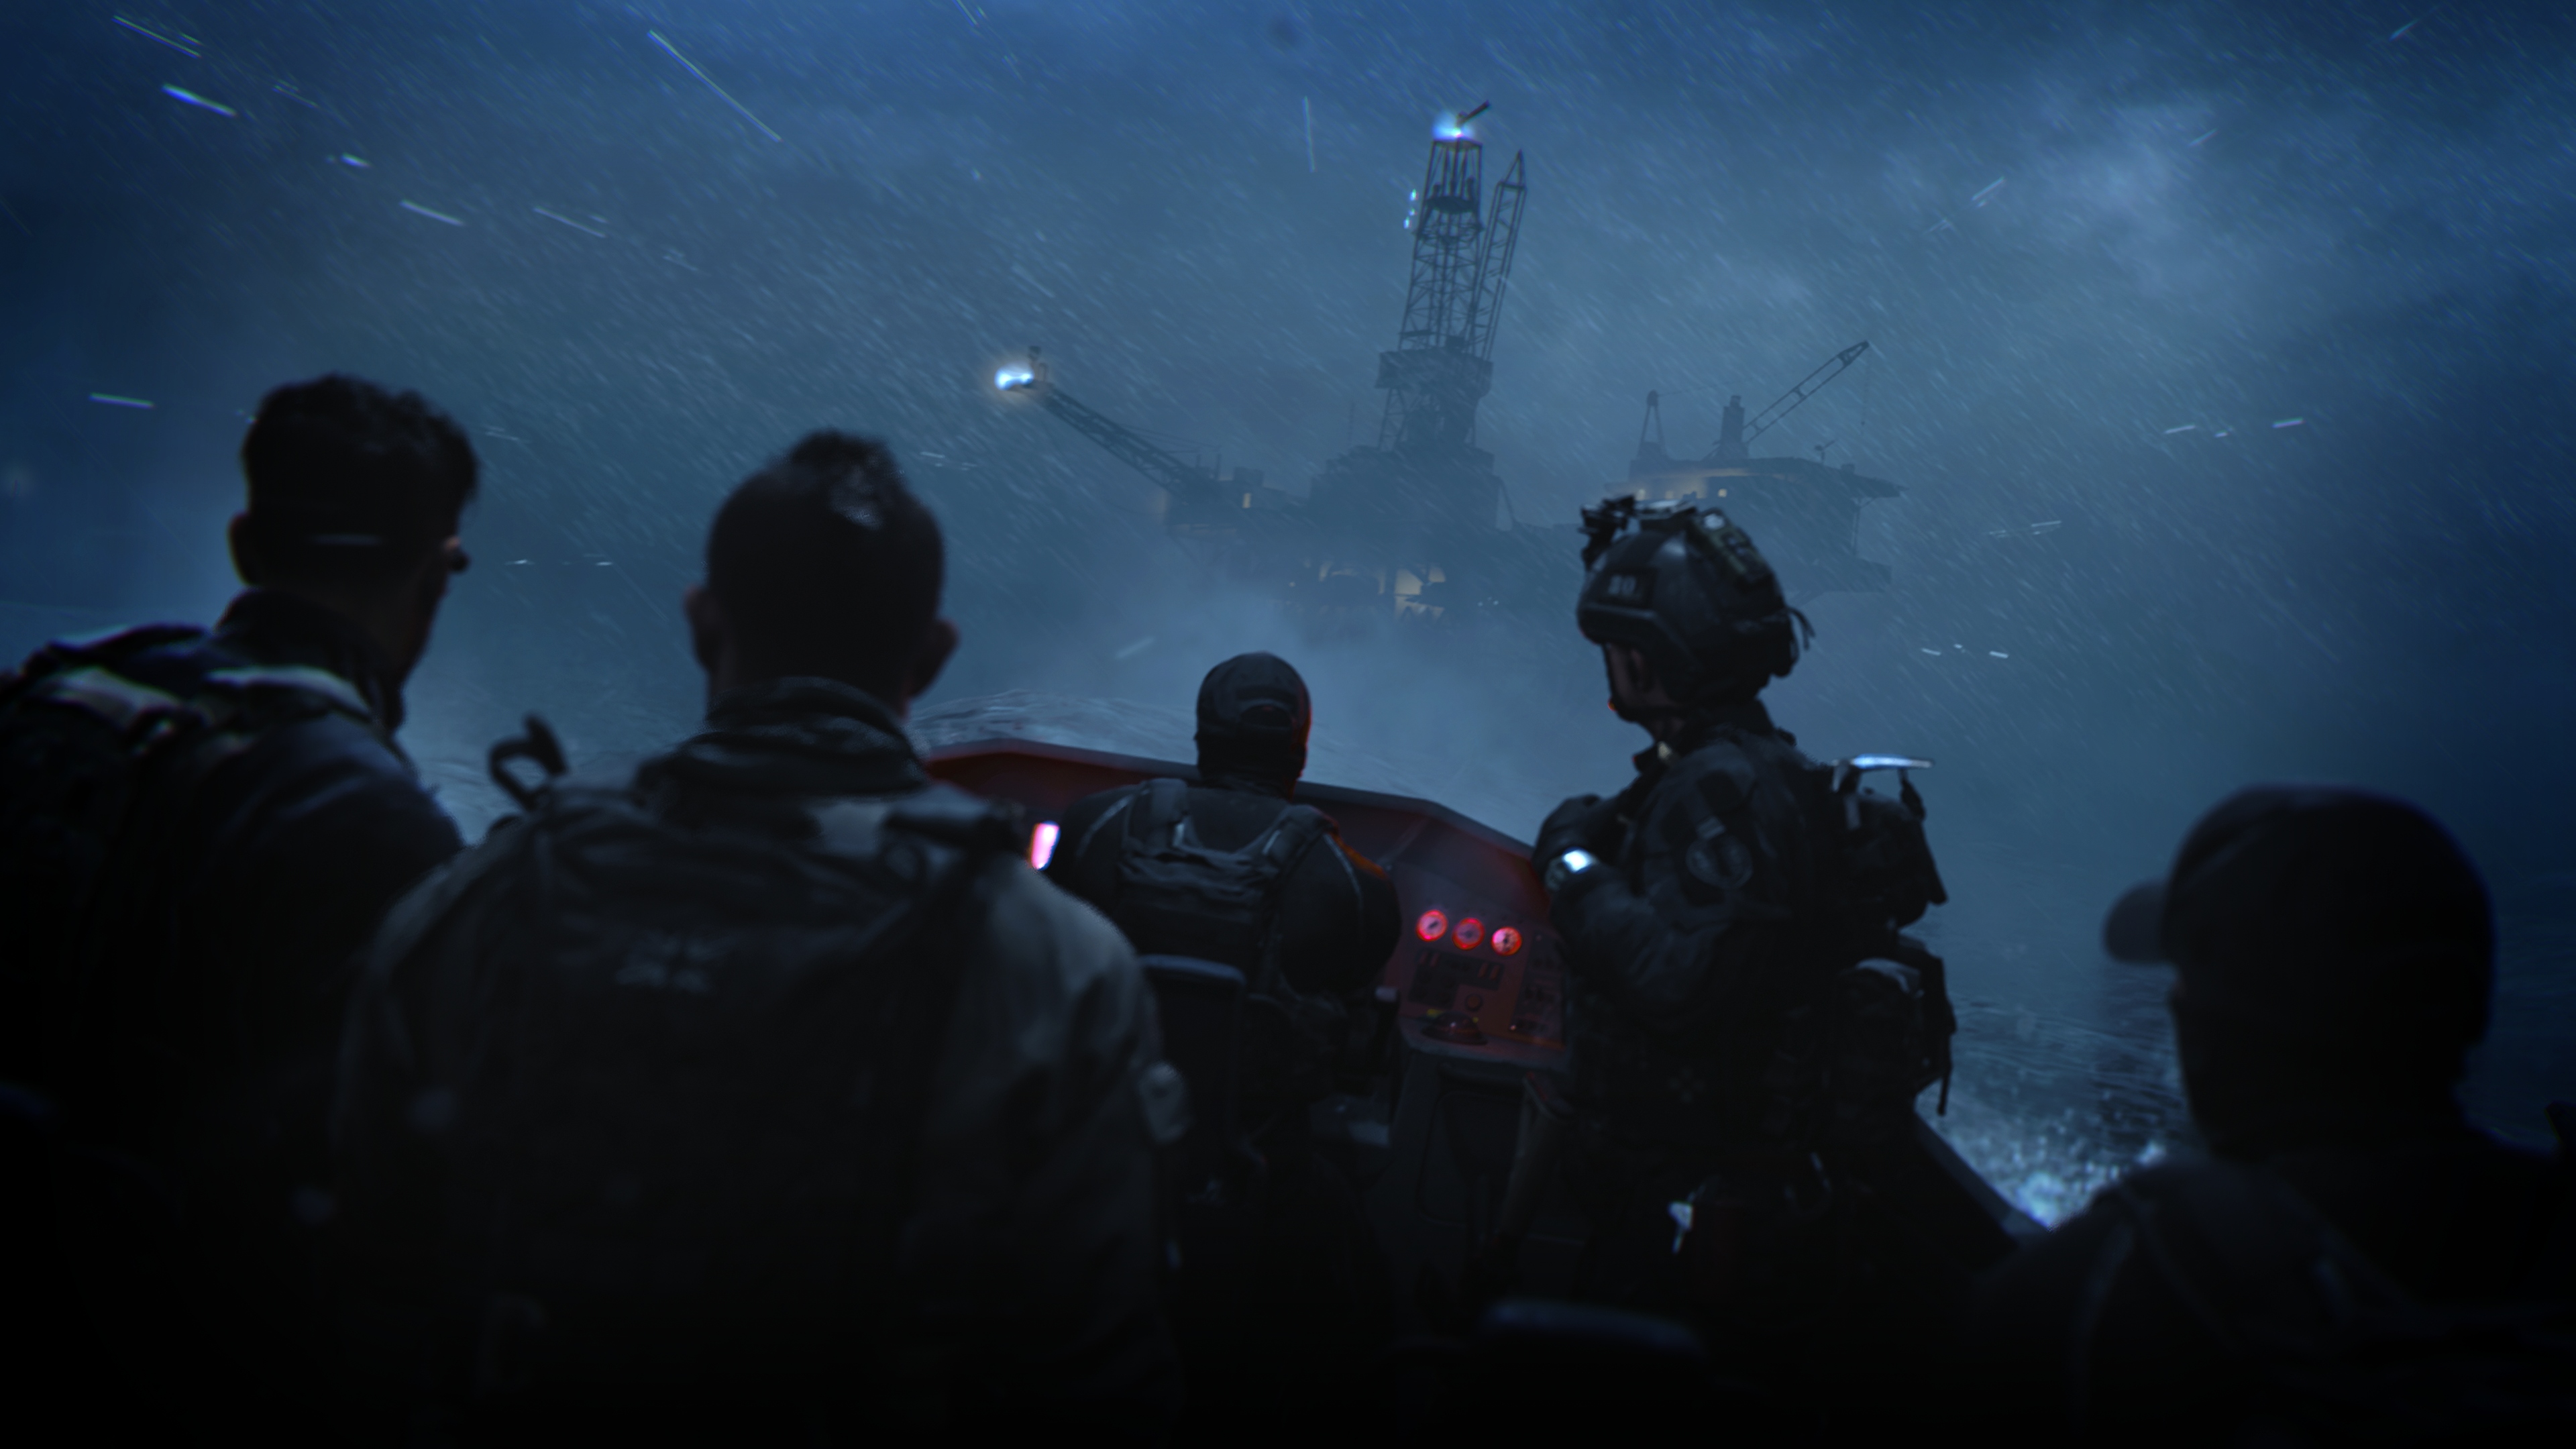 Call of Duty: Modern Warfare 2 2022 екранна снимка, показваща петима герои в лодка по бурно море